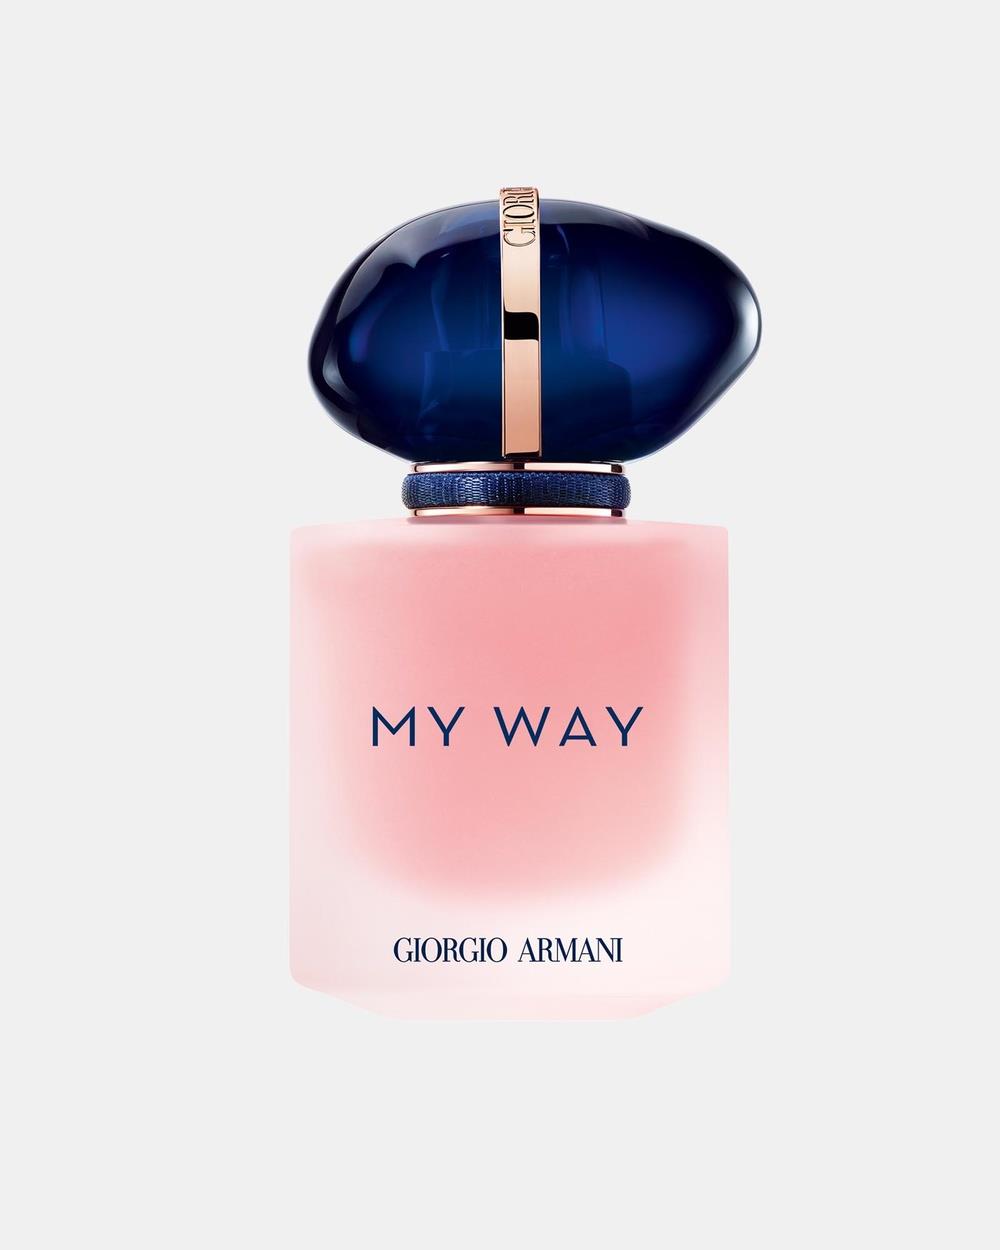 Giorgio Armani - My Way Floral Eau de Parfum - Fragrance (Floral) My Way Floral Eau de Parfum